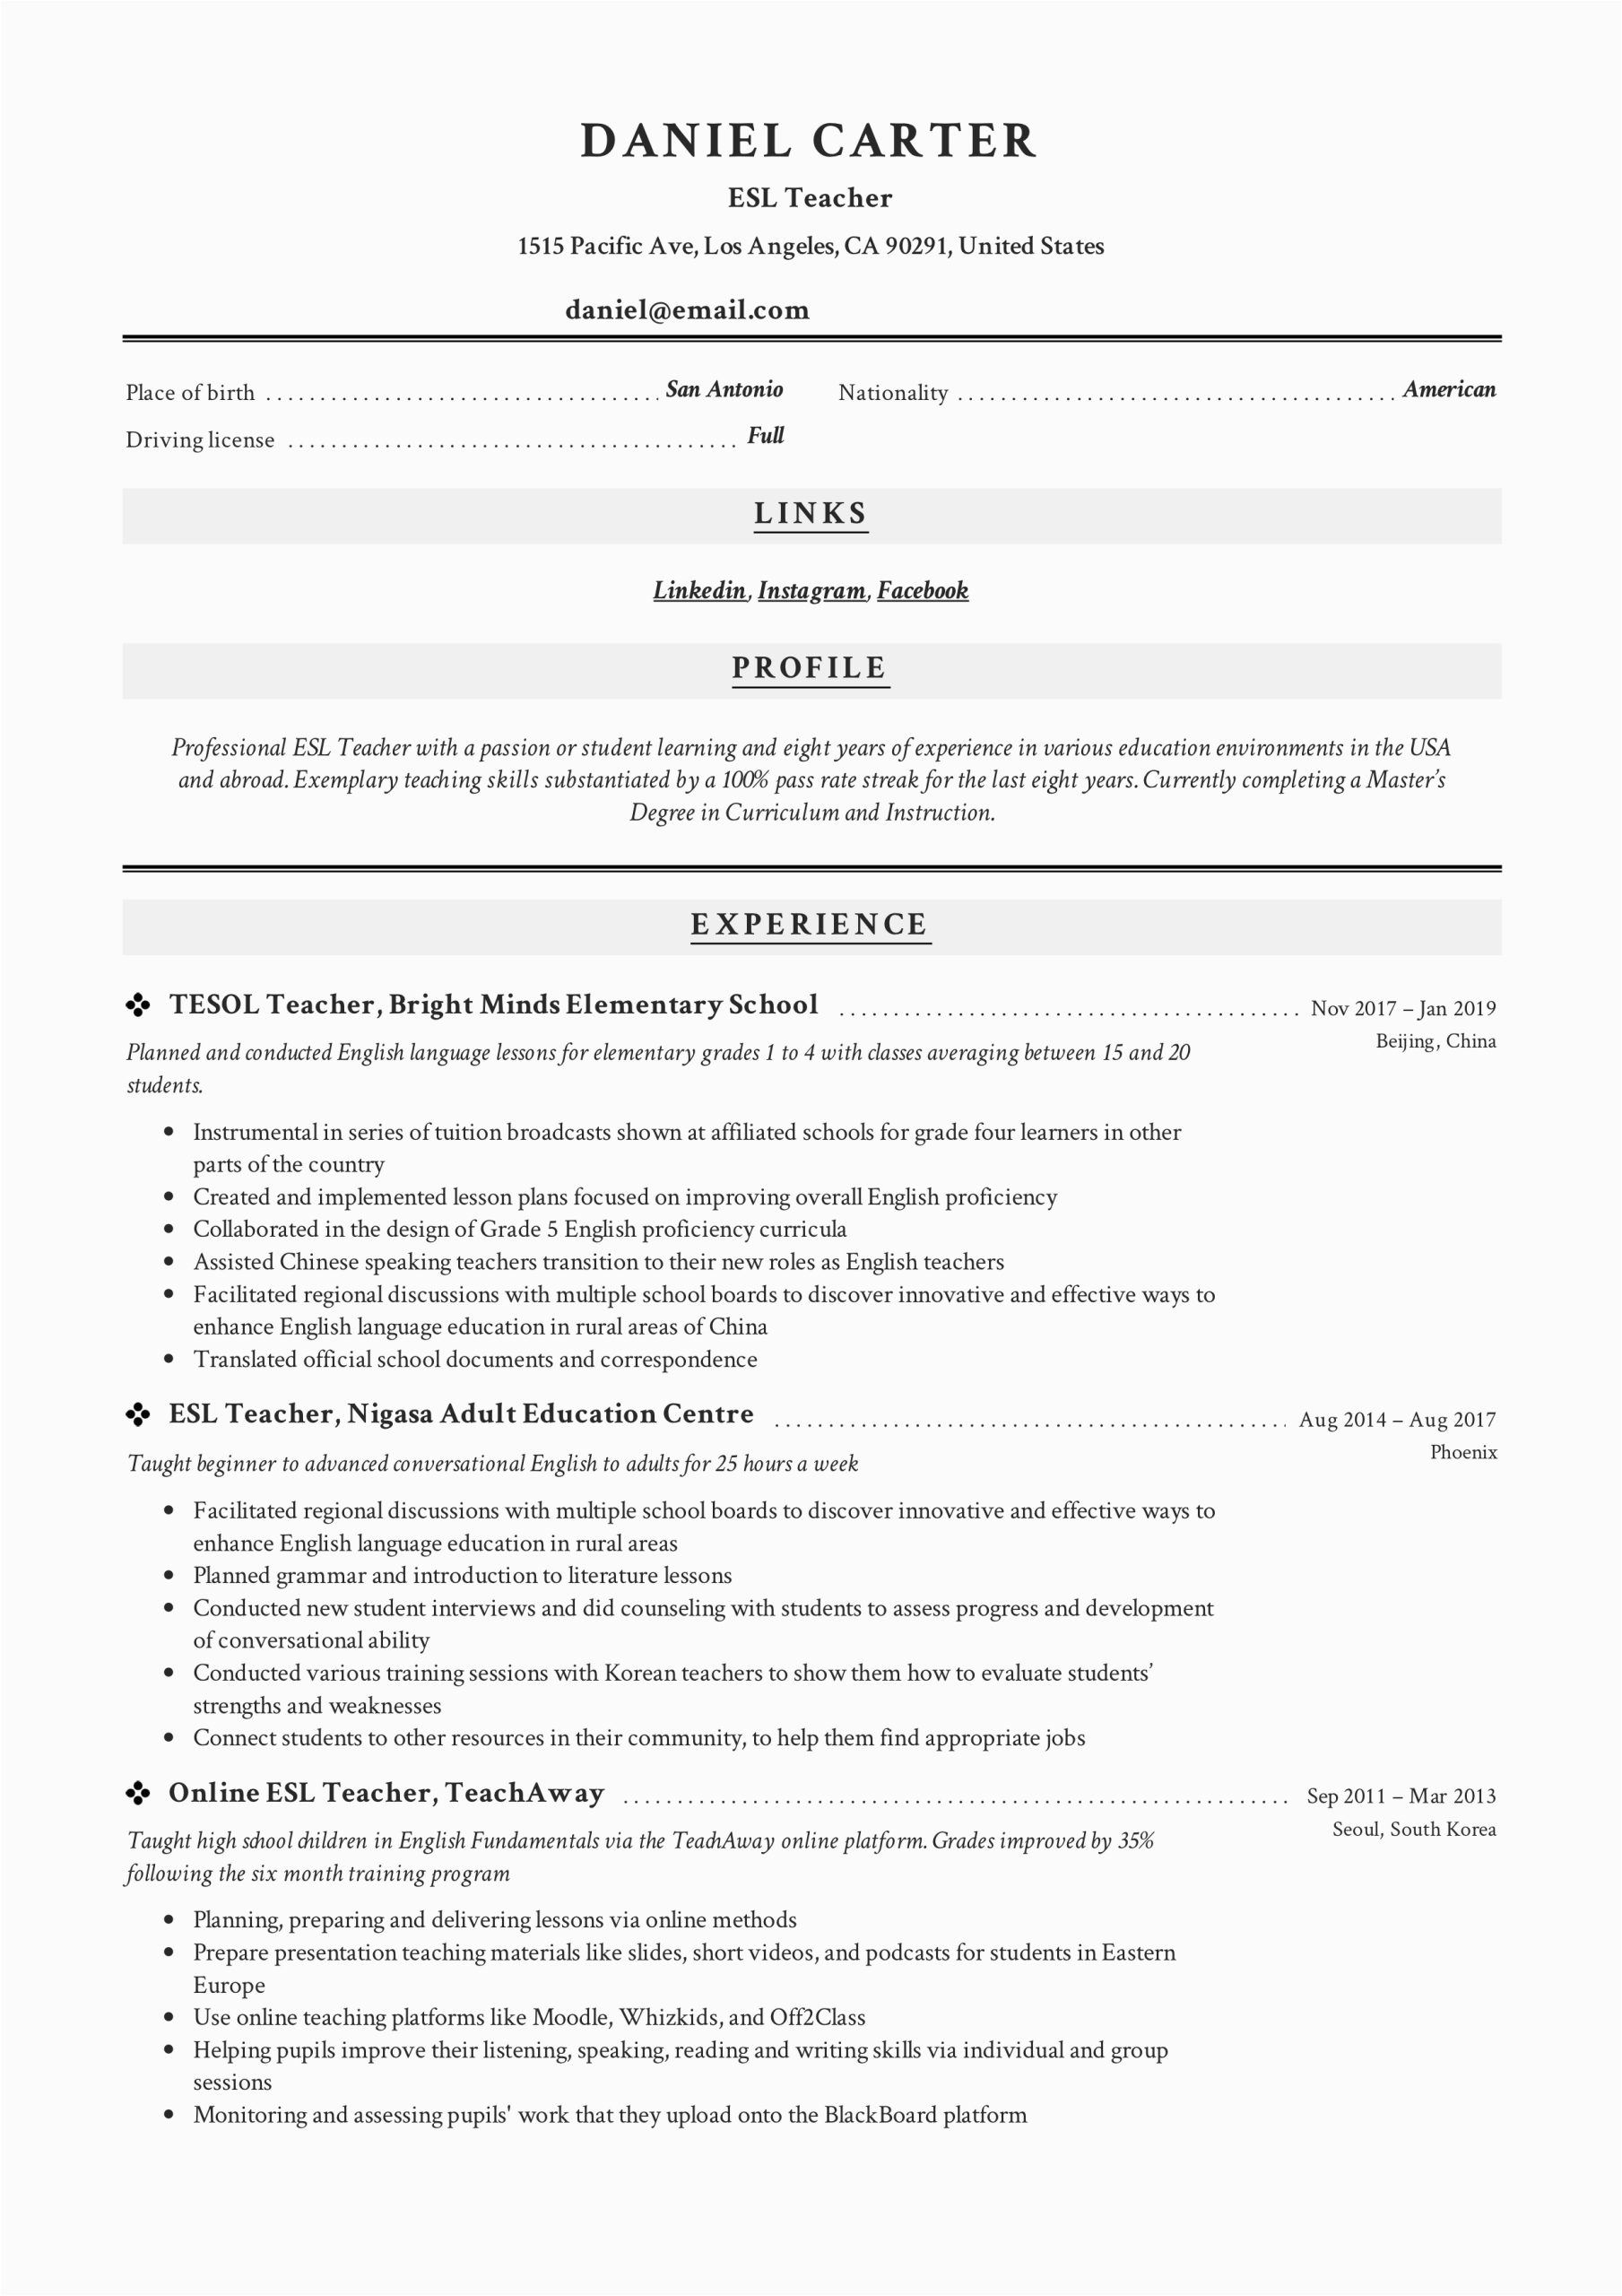 Sample Resume for Online English Teacher 19 Esl Teacher Resume Examples & Writing Guide